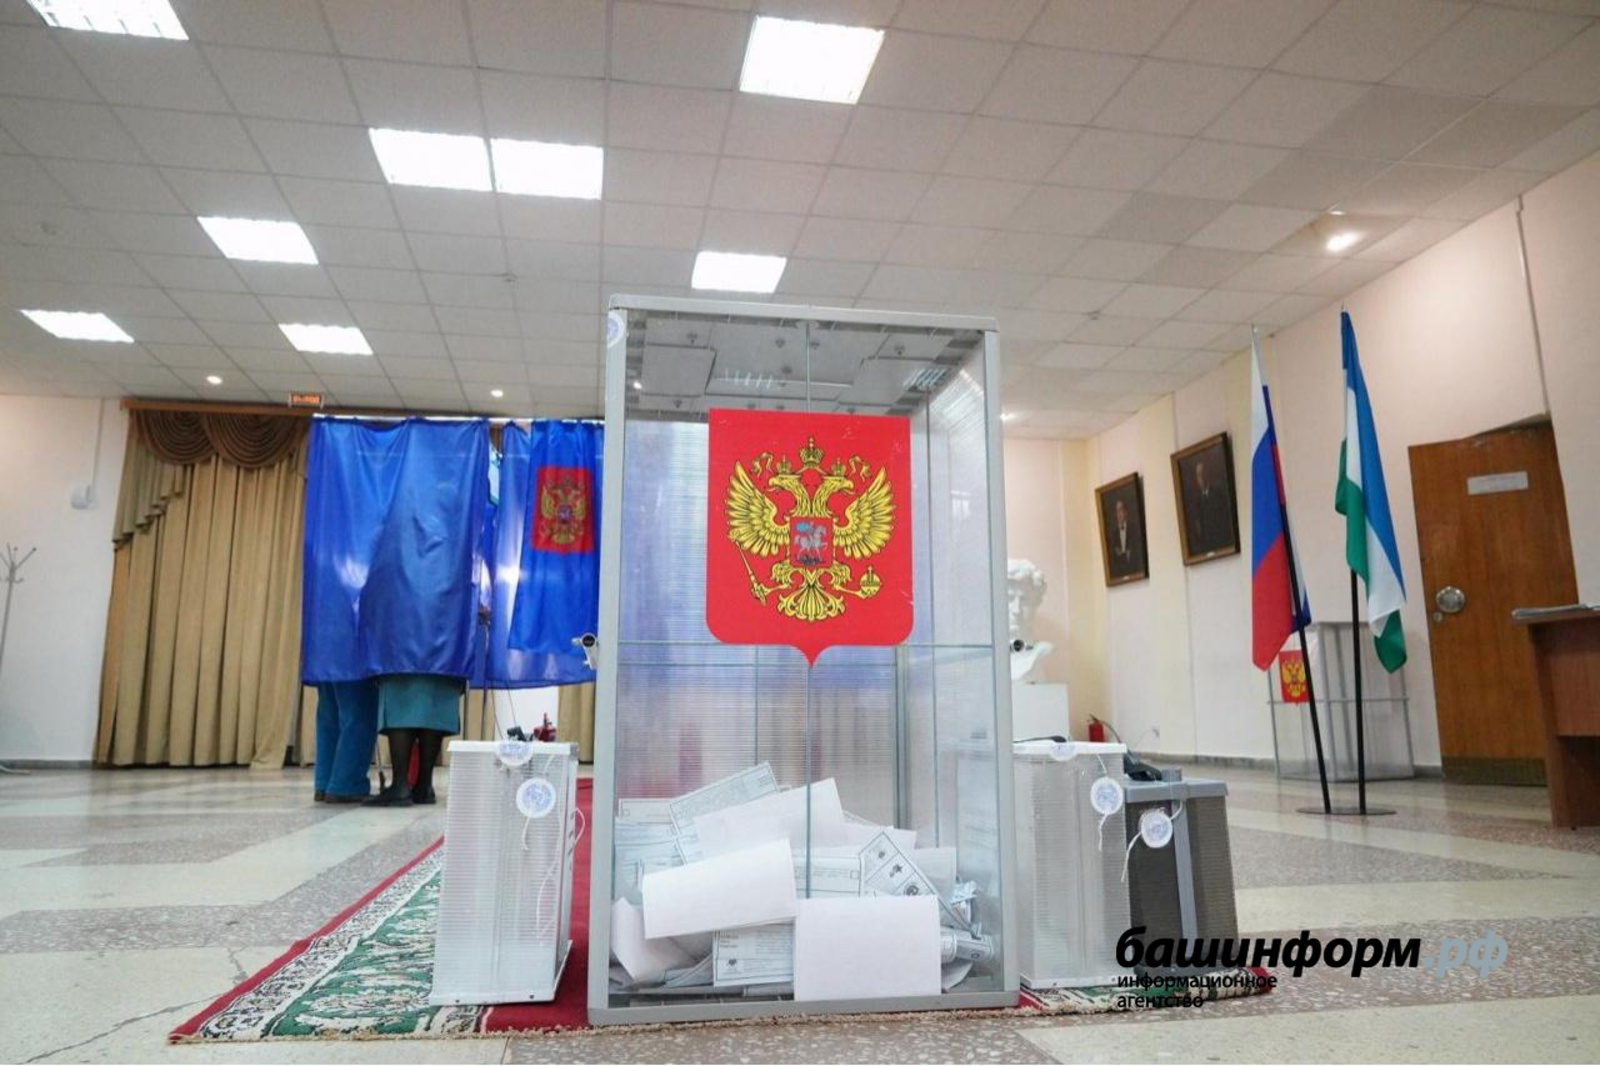 Явка на выборах в Госдуму РФ   в Башкирии составила  48,5%